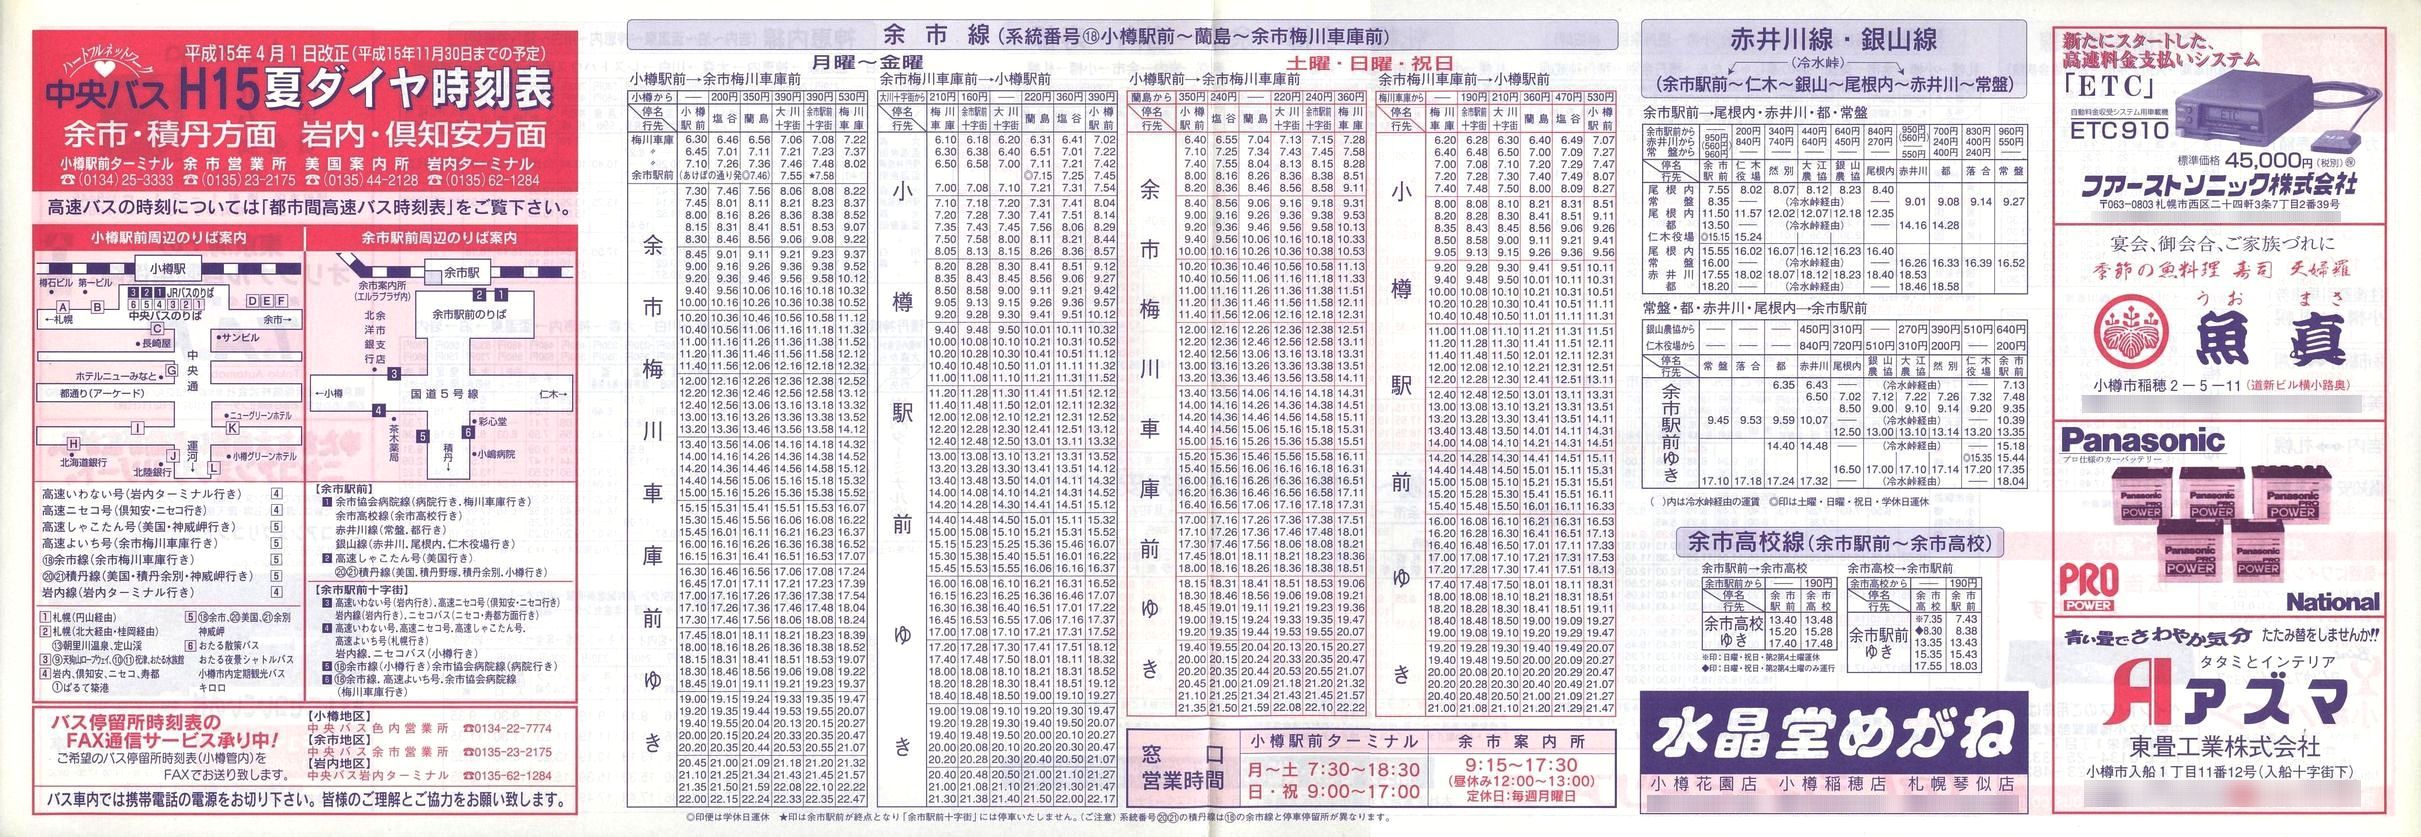 2003-04-01改正_北海道中央バス(小樽)_余市・積丹・岩内・倶知安方面時刻表表面